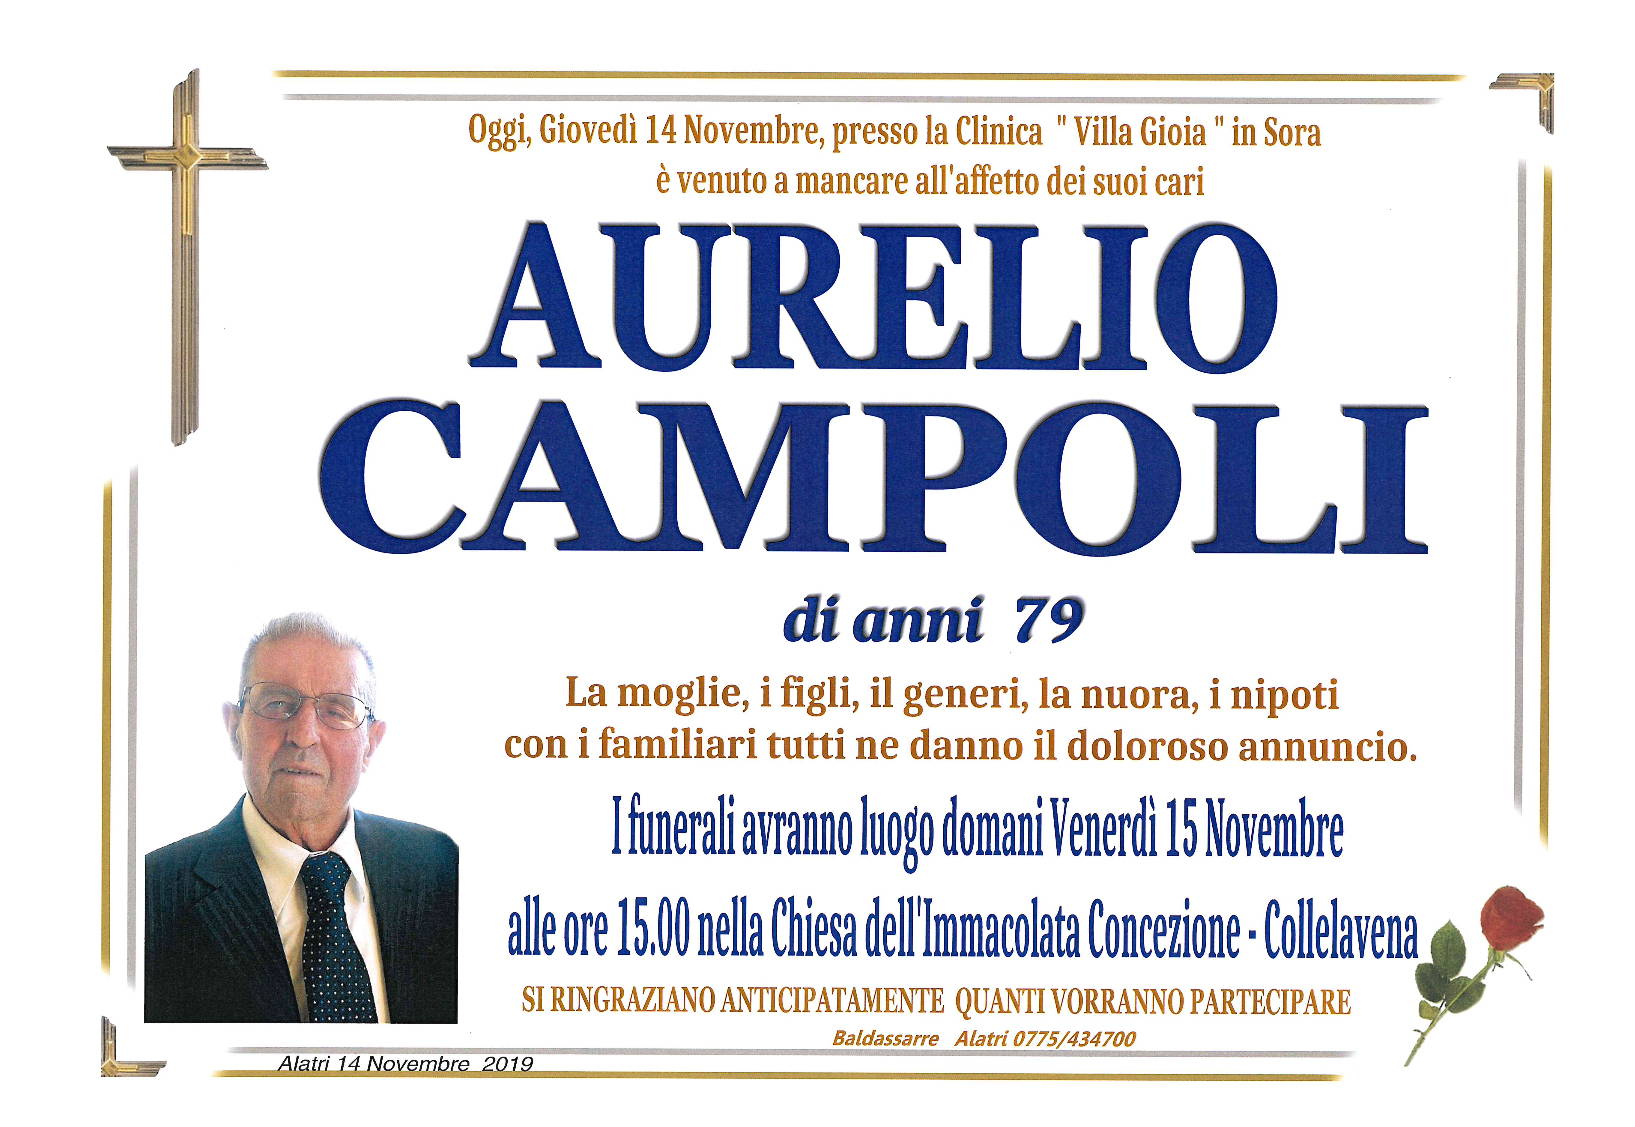 Aurelio Campoli